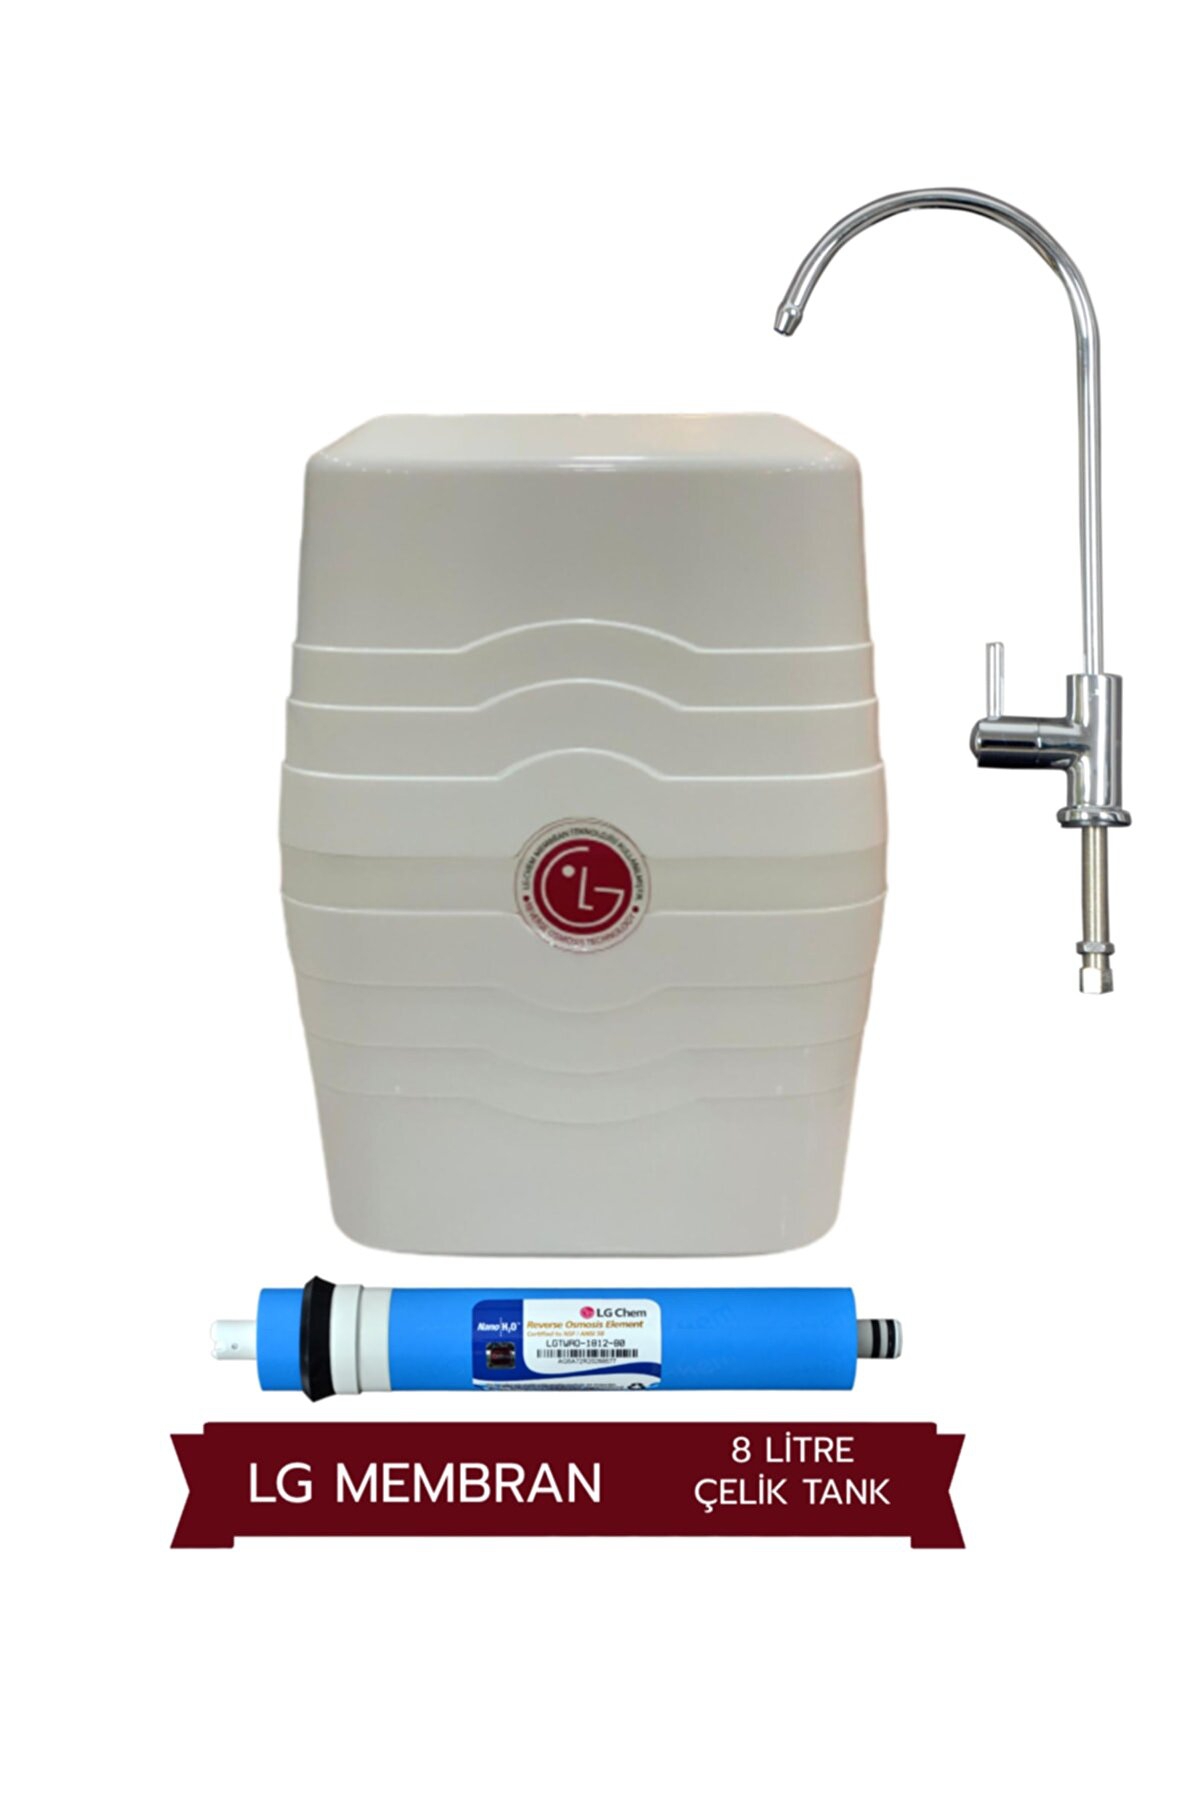 LG Premium 7 Az Yer Kaplayan Su Arıtma Cihazı